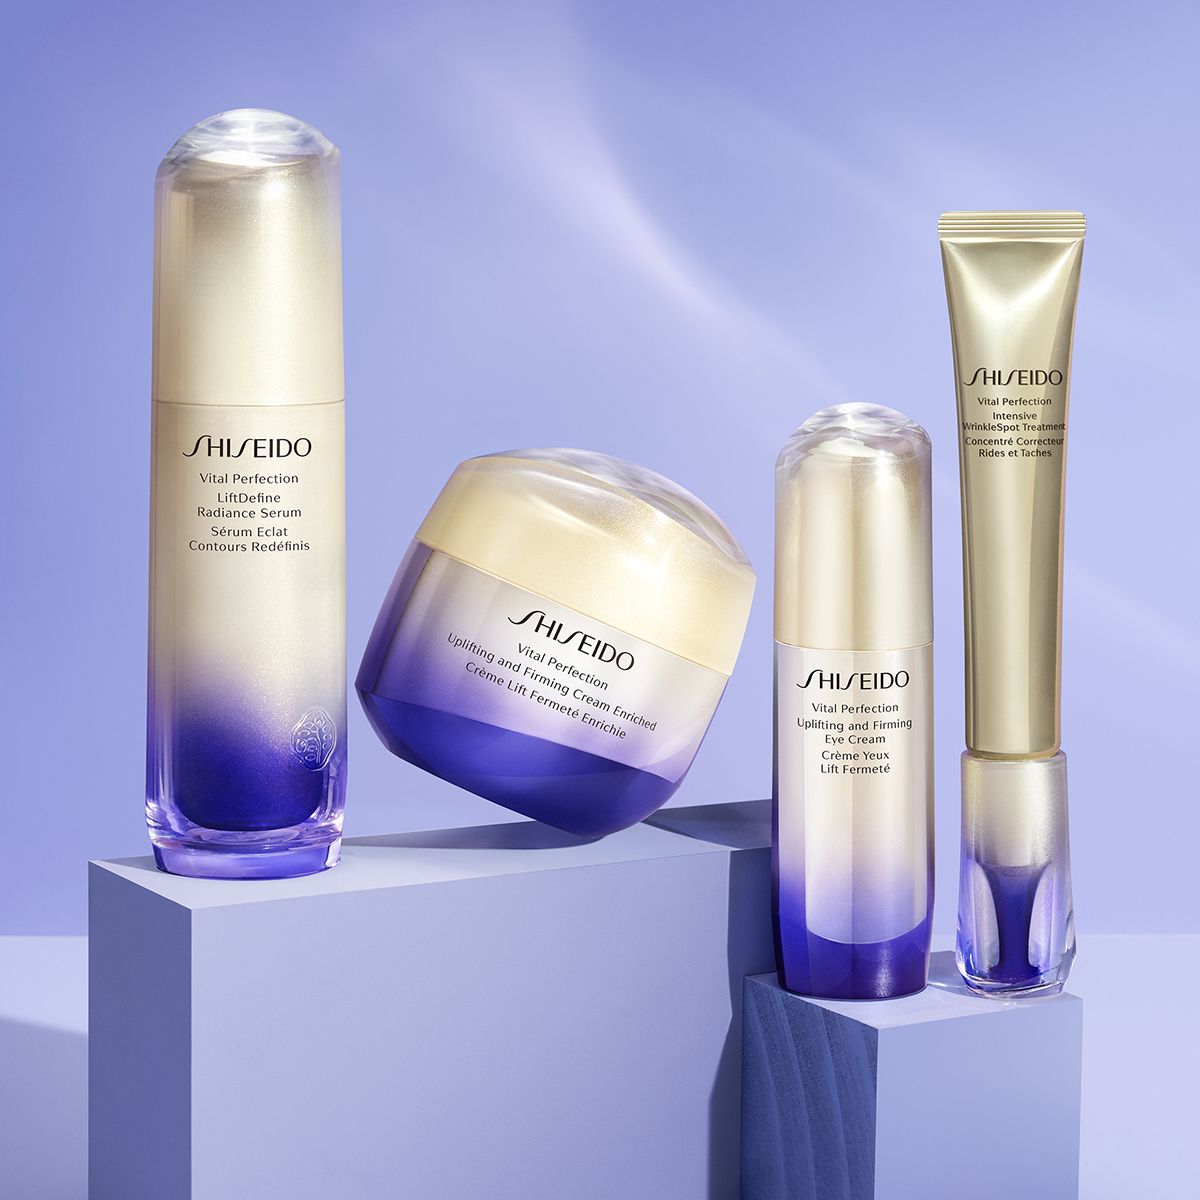 La rutina de belleza con la que lograr el efecto lifting definitivo es de Shiseido